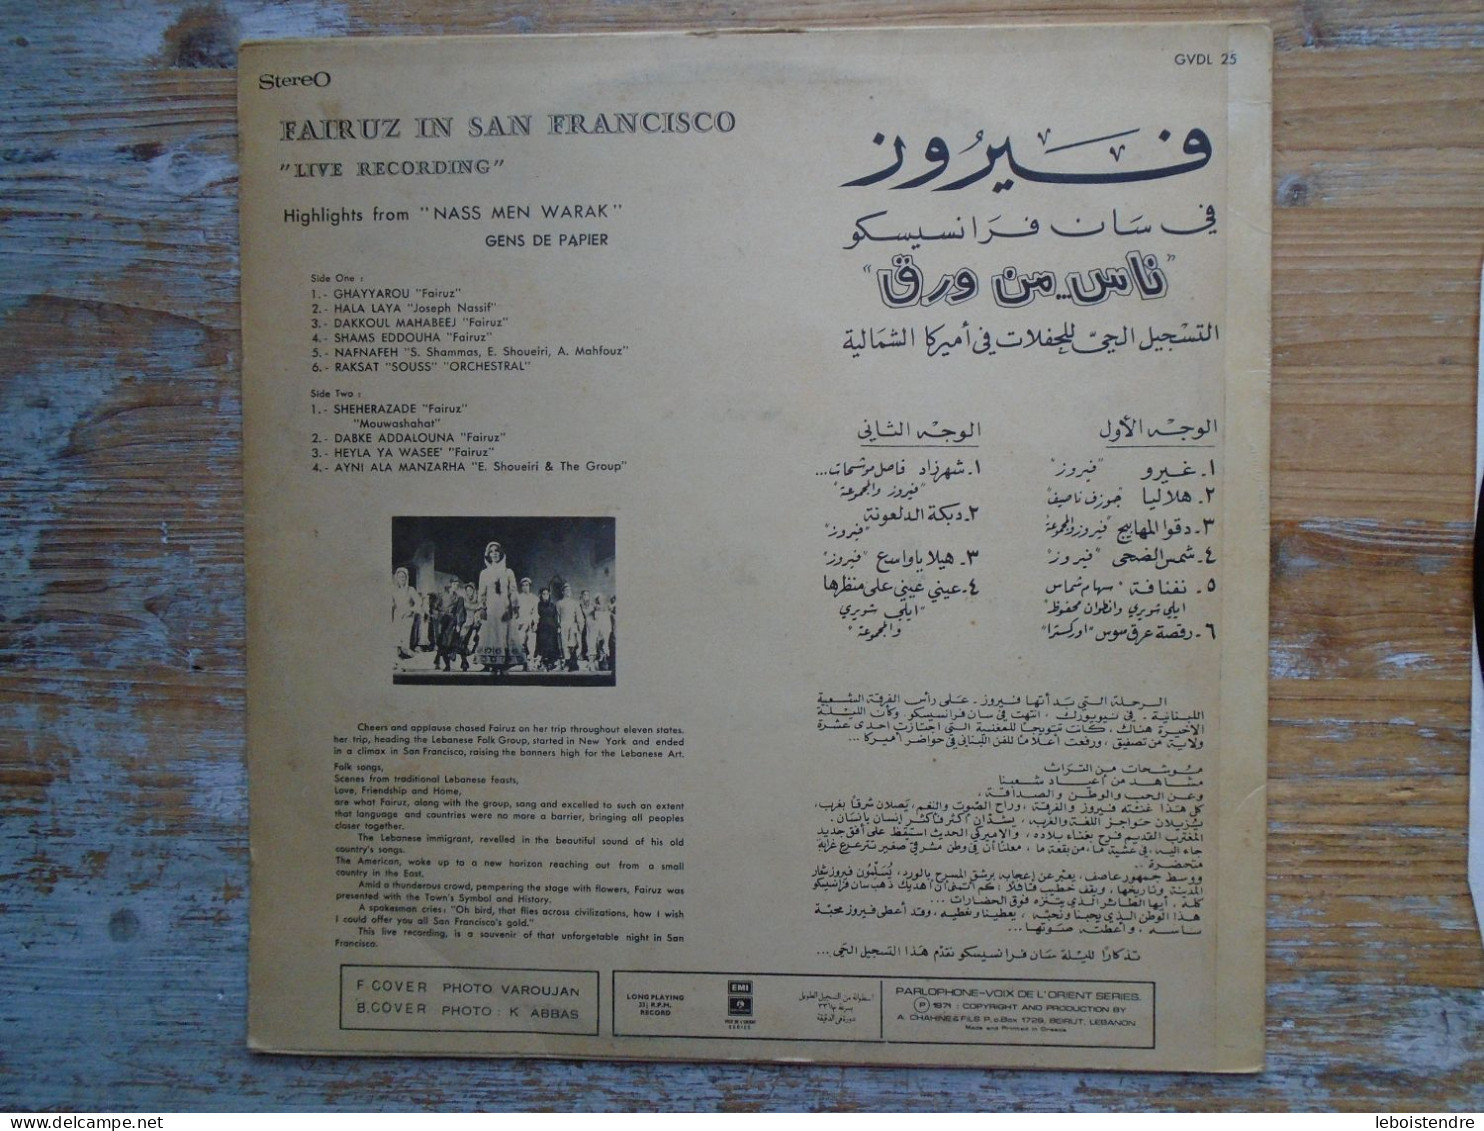 RARE 33 T LP VINYLE FAIROUZ FAIR UZ IN SAN FRANCISCO GVDL 25 BIEM VOIX DE L ORIENT SERIES GENS DE PAPIER - Musiques Du Monde